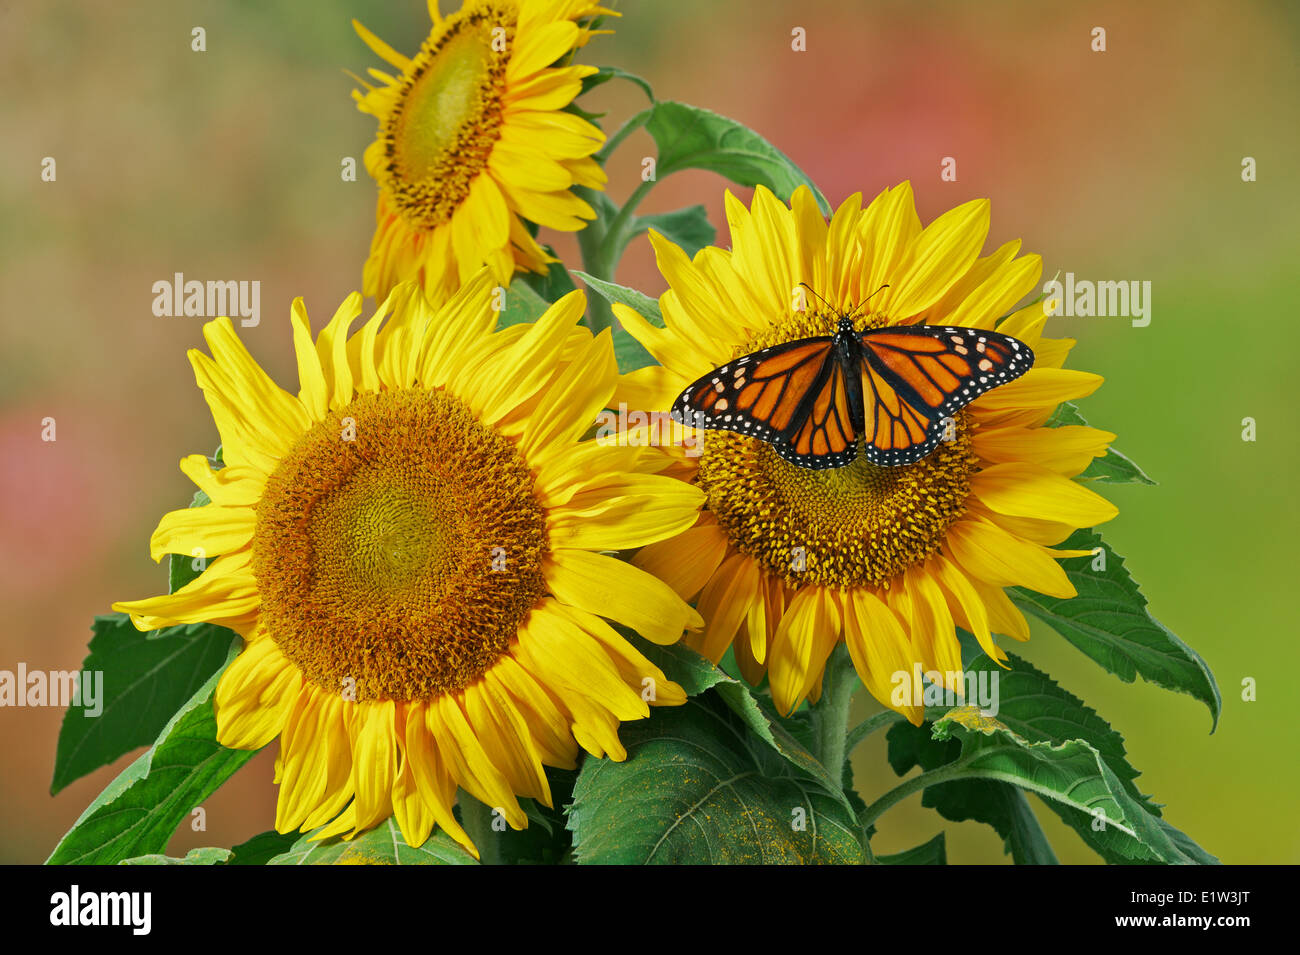 Monarch (Danaus plexippus) butterfly on sunflower, summer, North America. Stock Photo